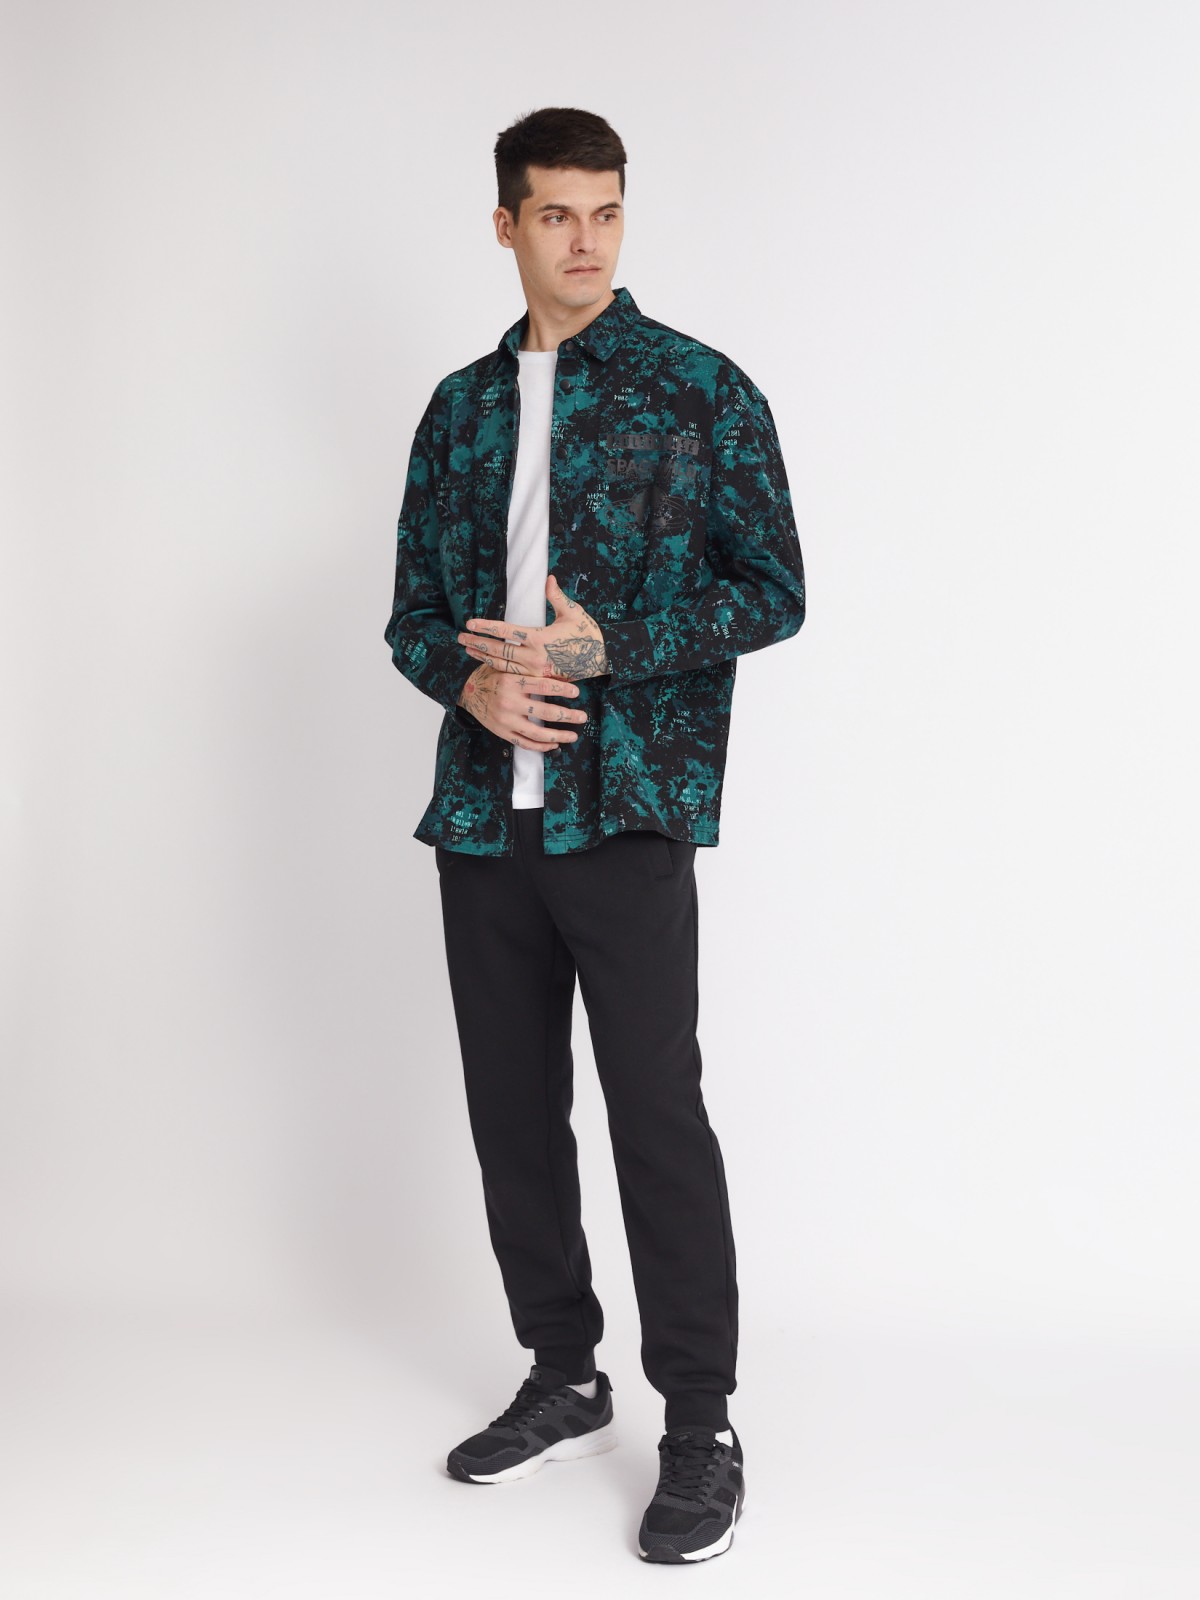 Куртка-рубашка из хлопка с принтом и нагрудным карманом zolla 213322191021, цвет бирюзовый, размер S - фото 2